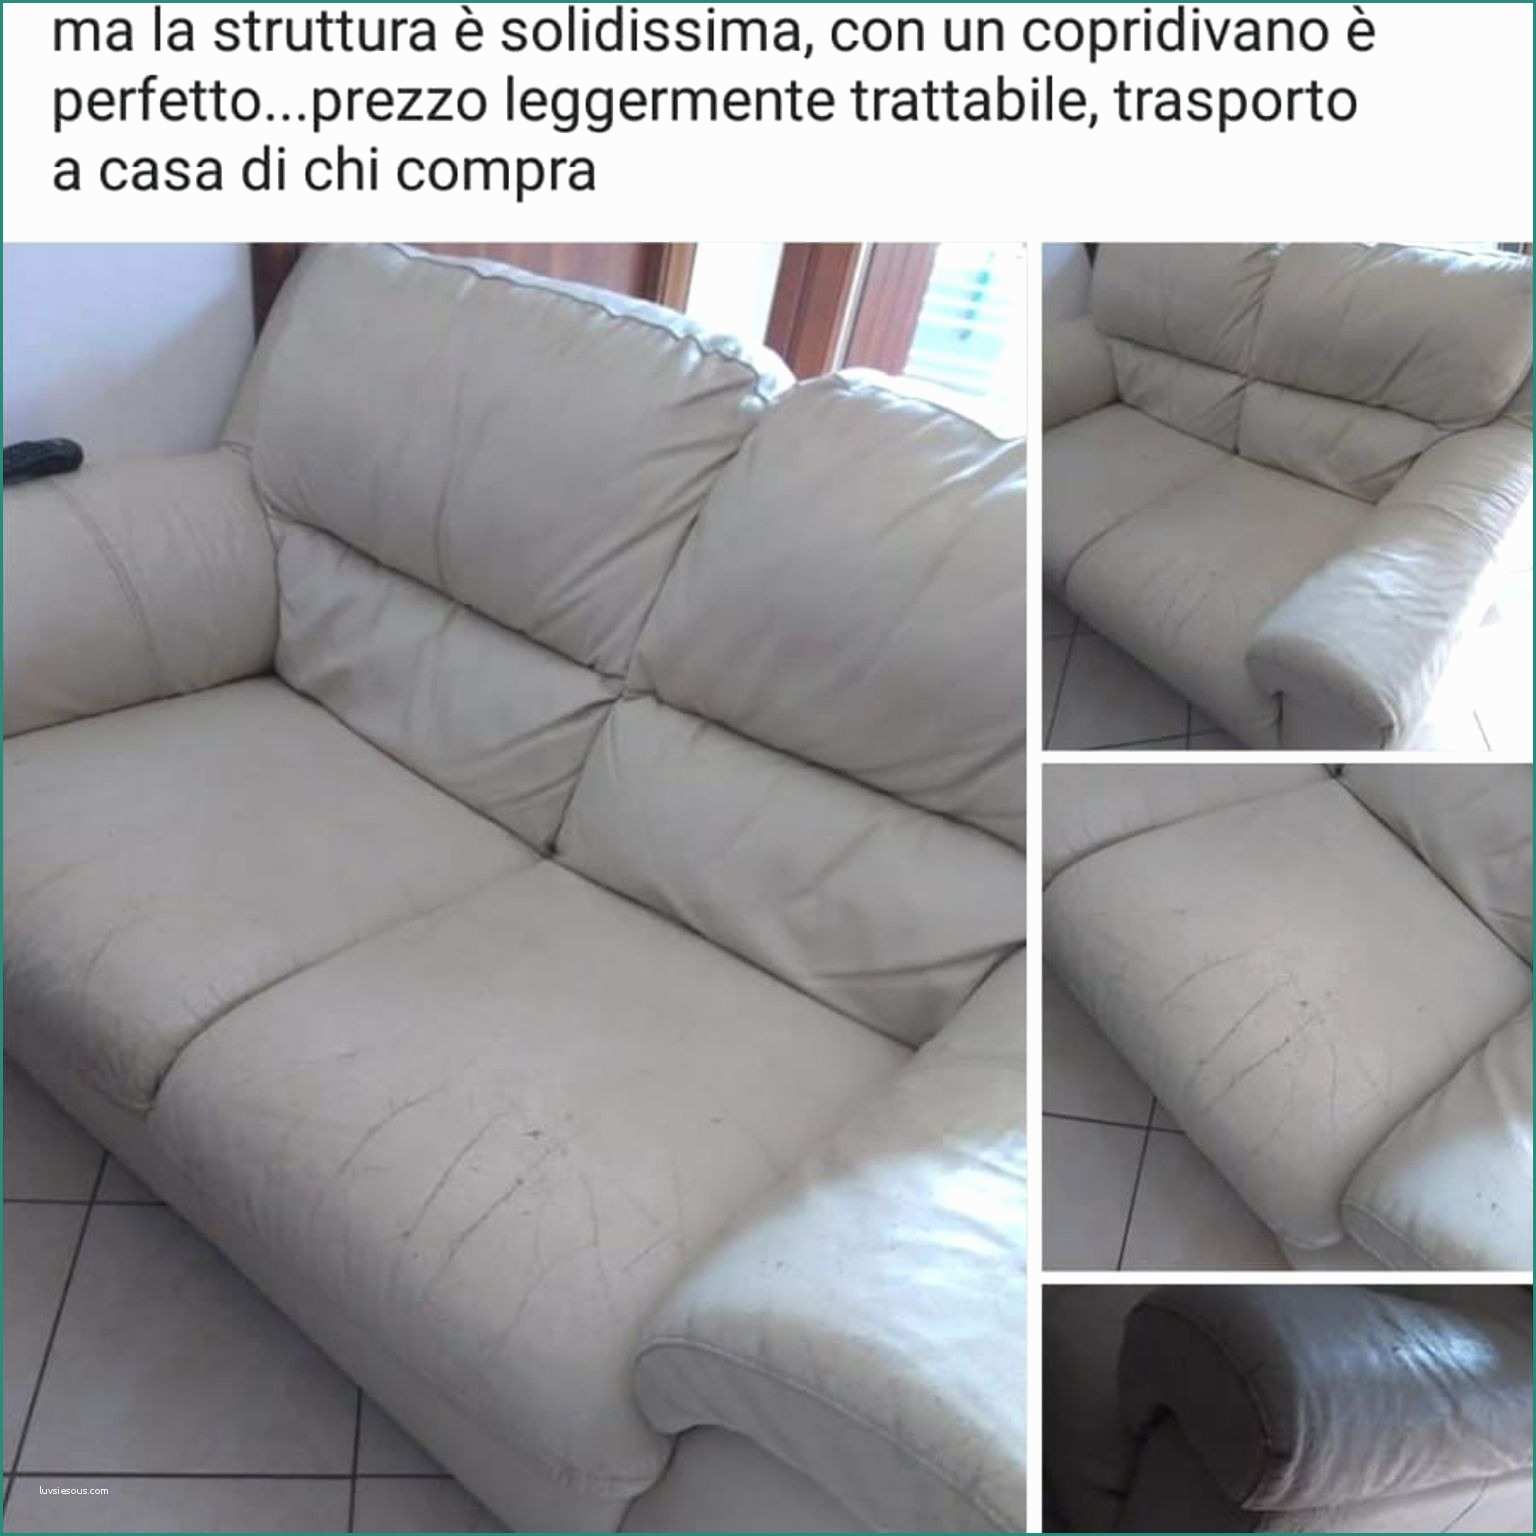 Poltrone E sofa Corsico E 2018 10 09t13 29 58